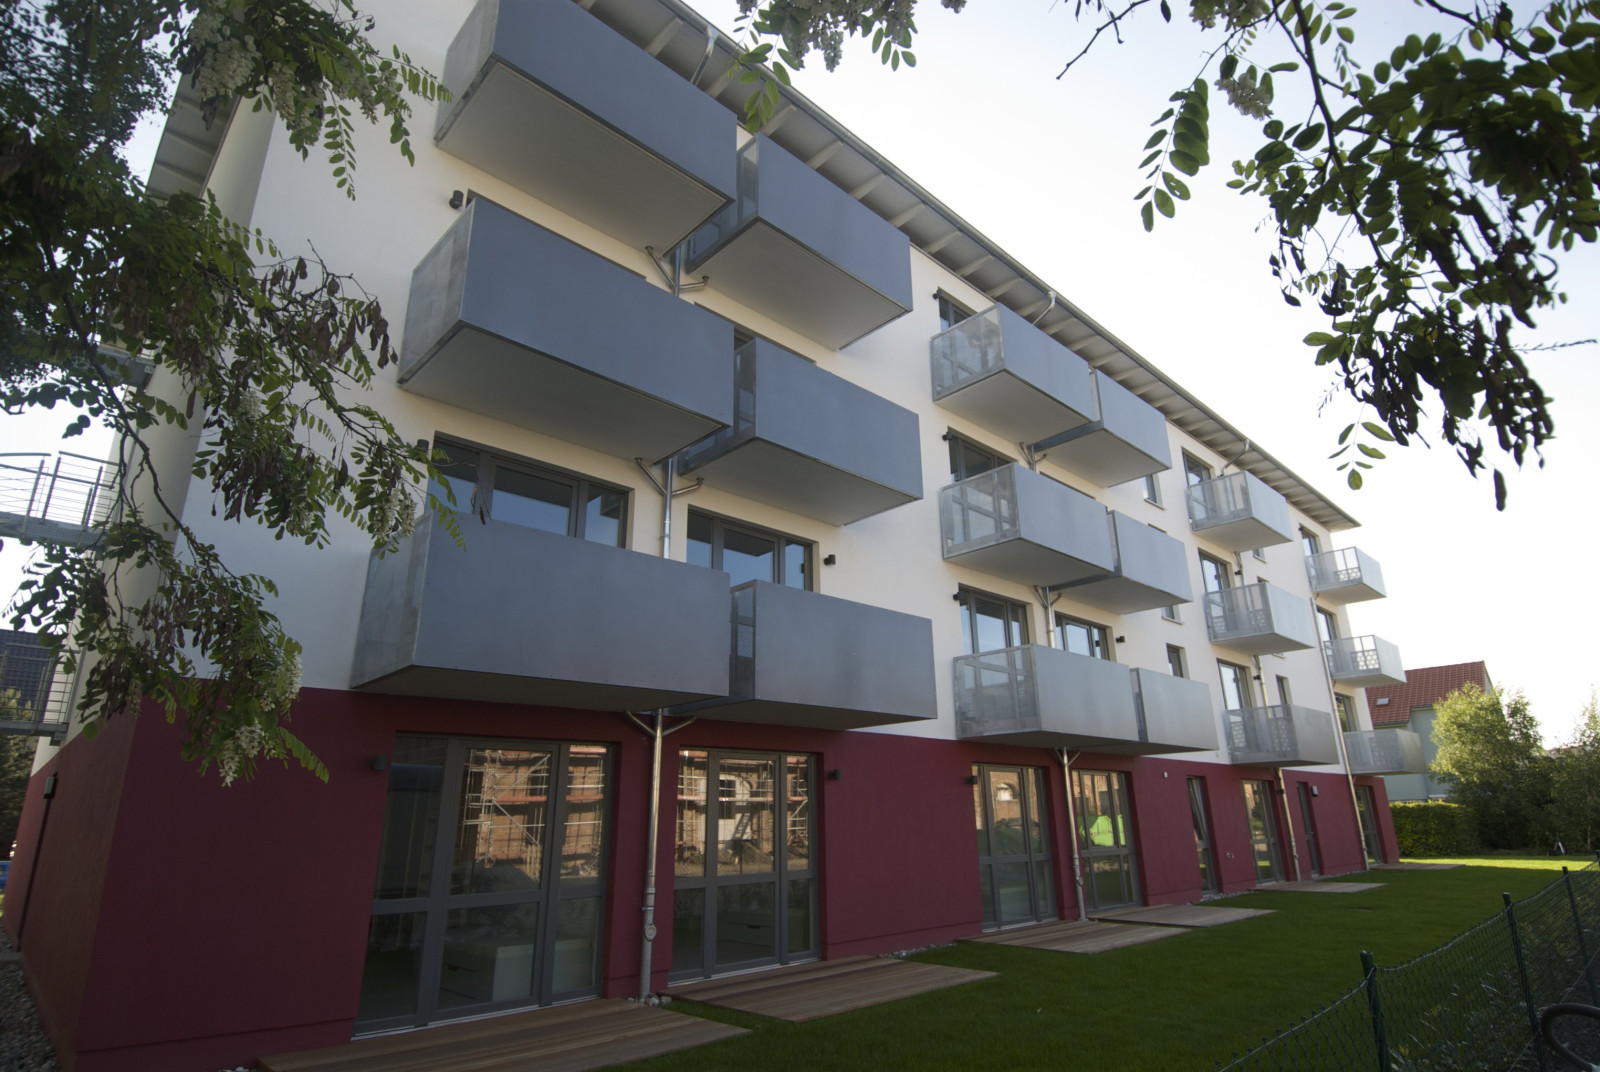 Balkone der Studentenwohnungen in Greifswald